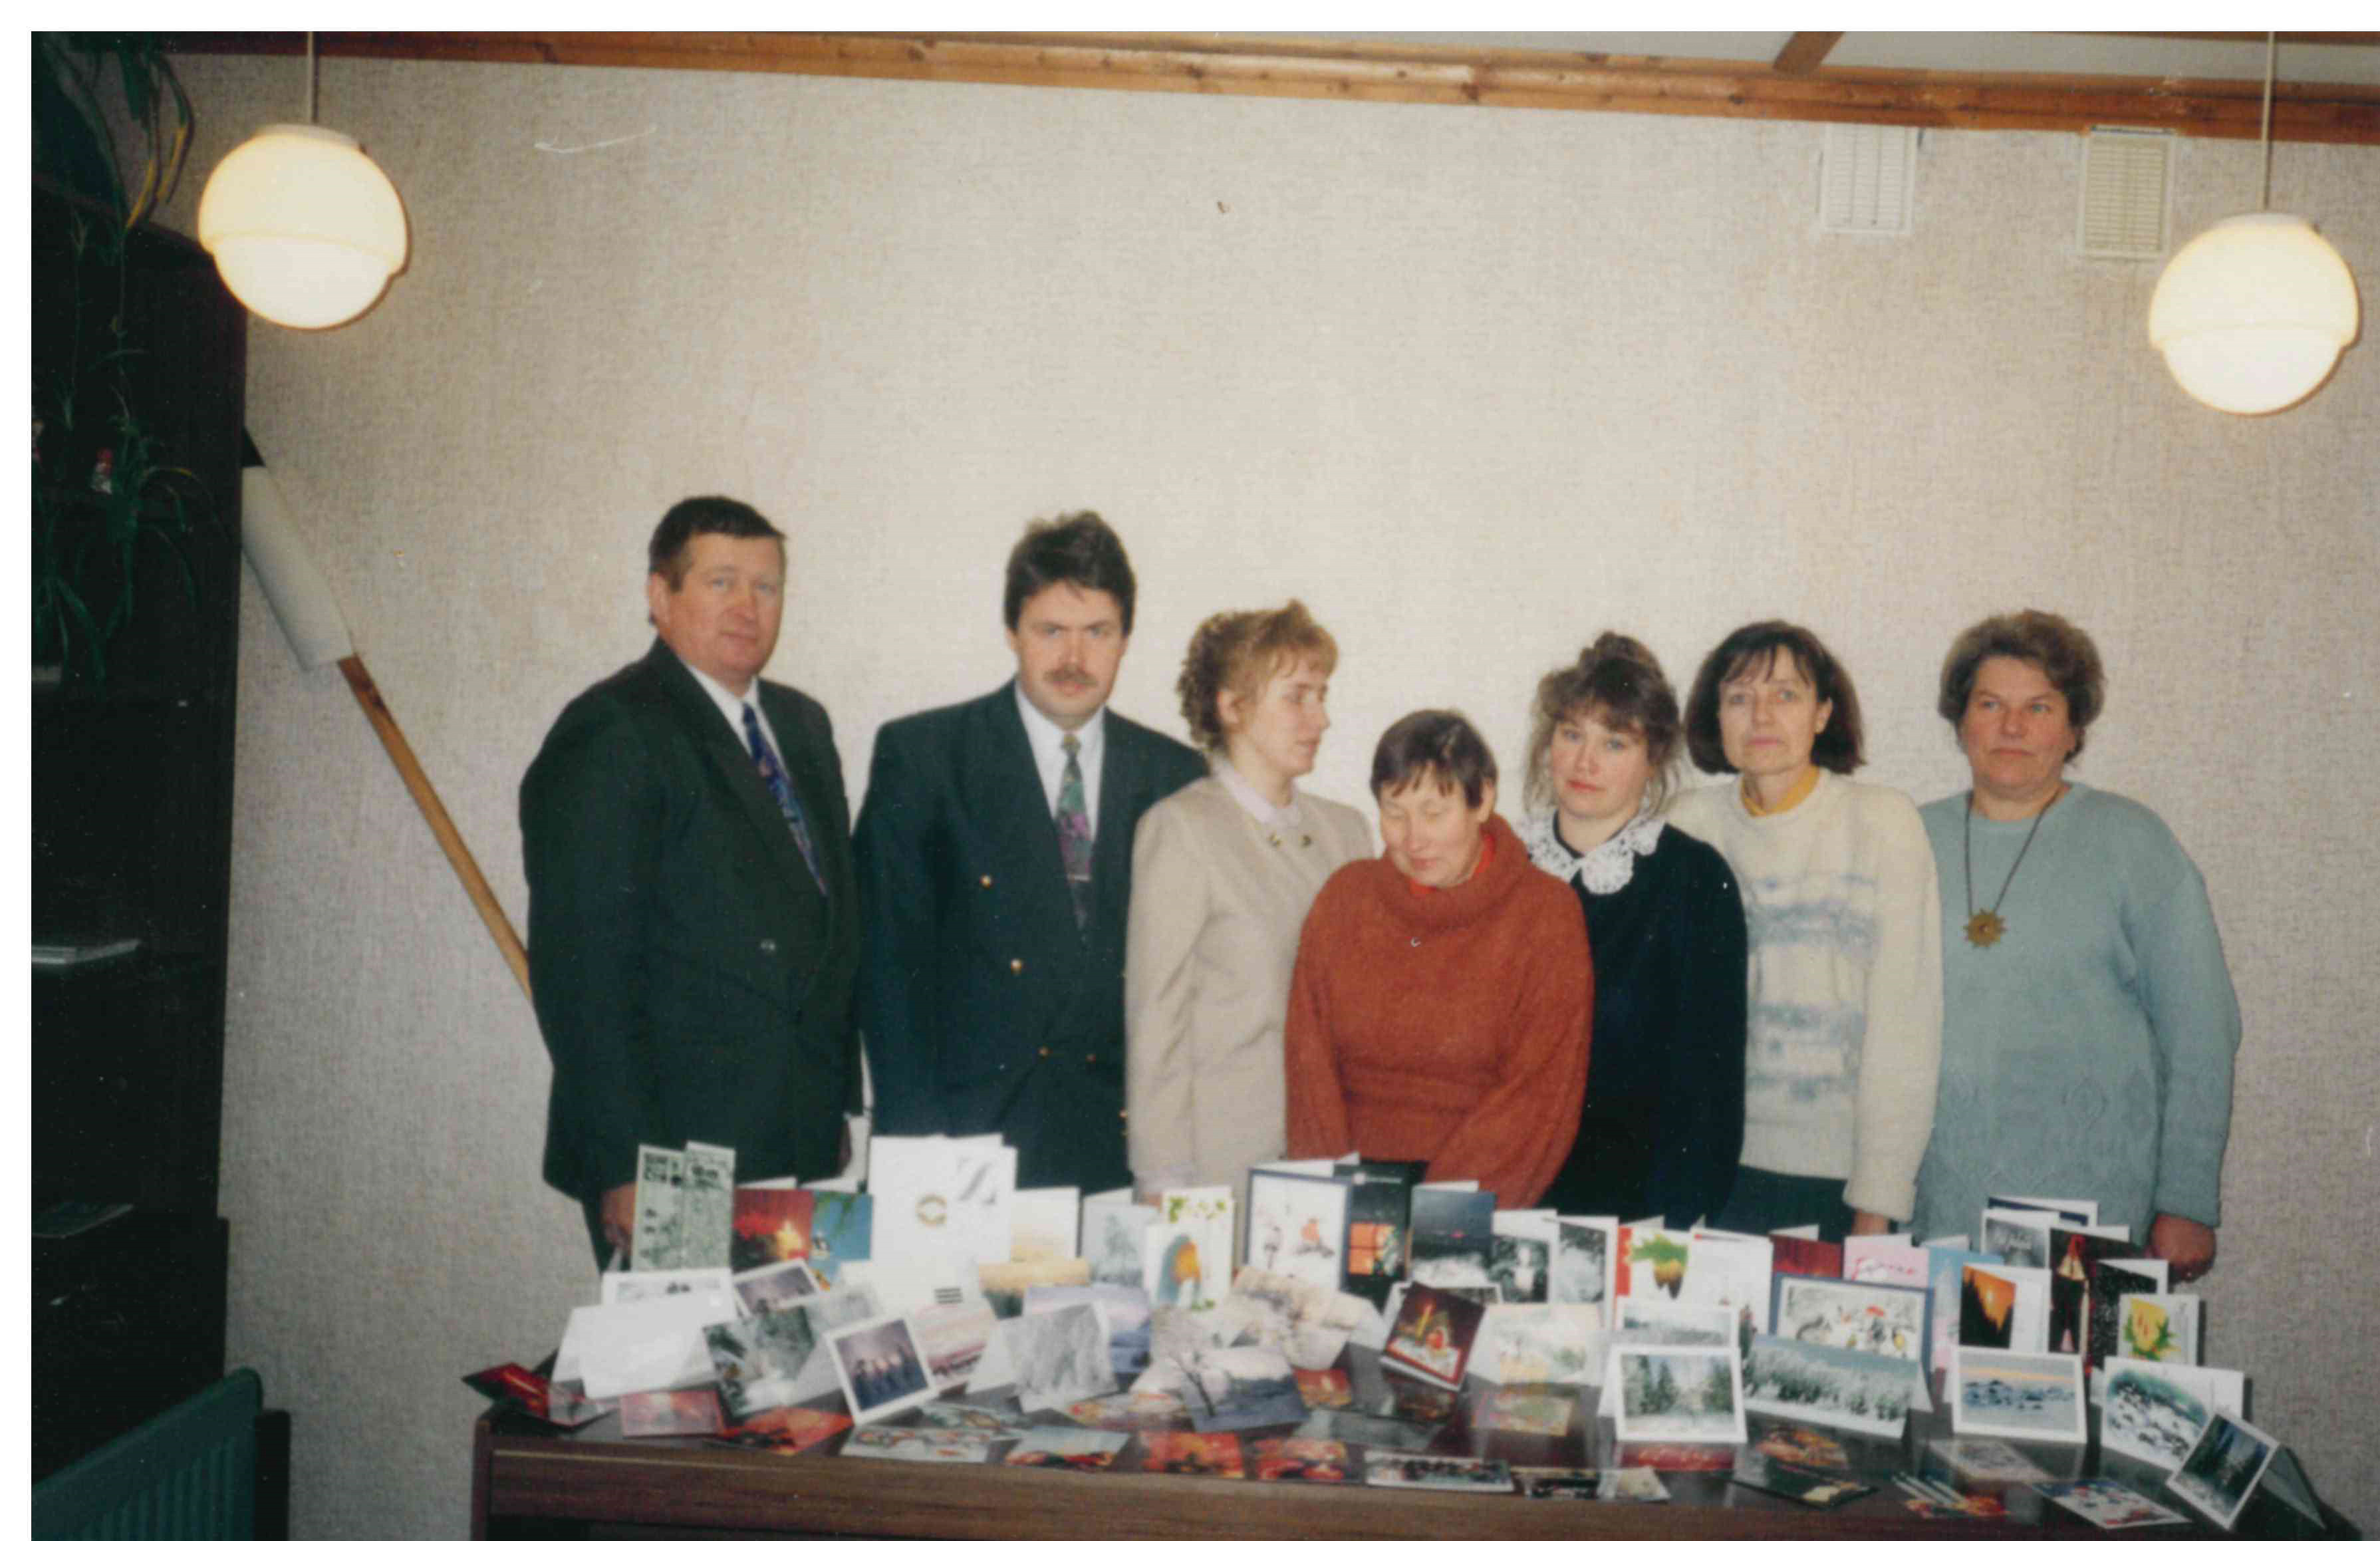 Employees of Taebla rural municipality 1993-1996.